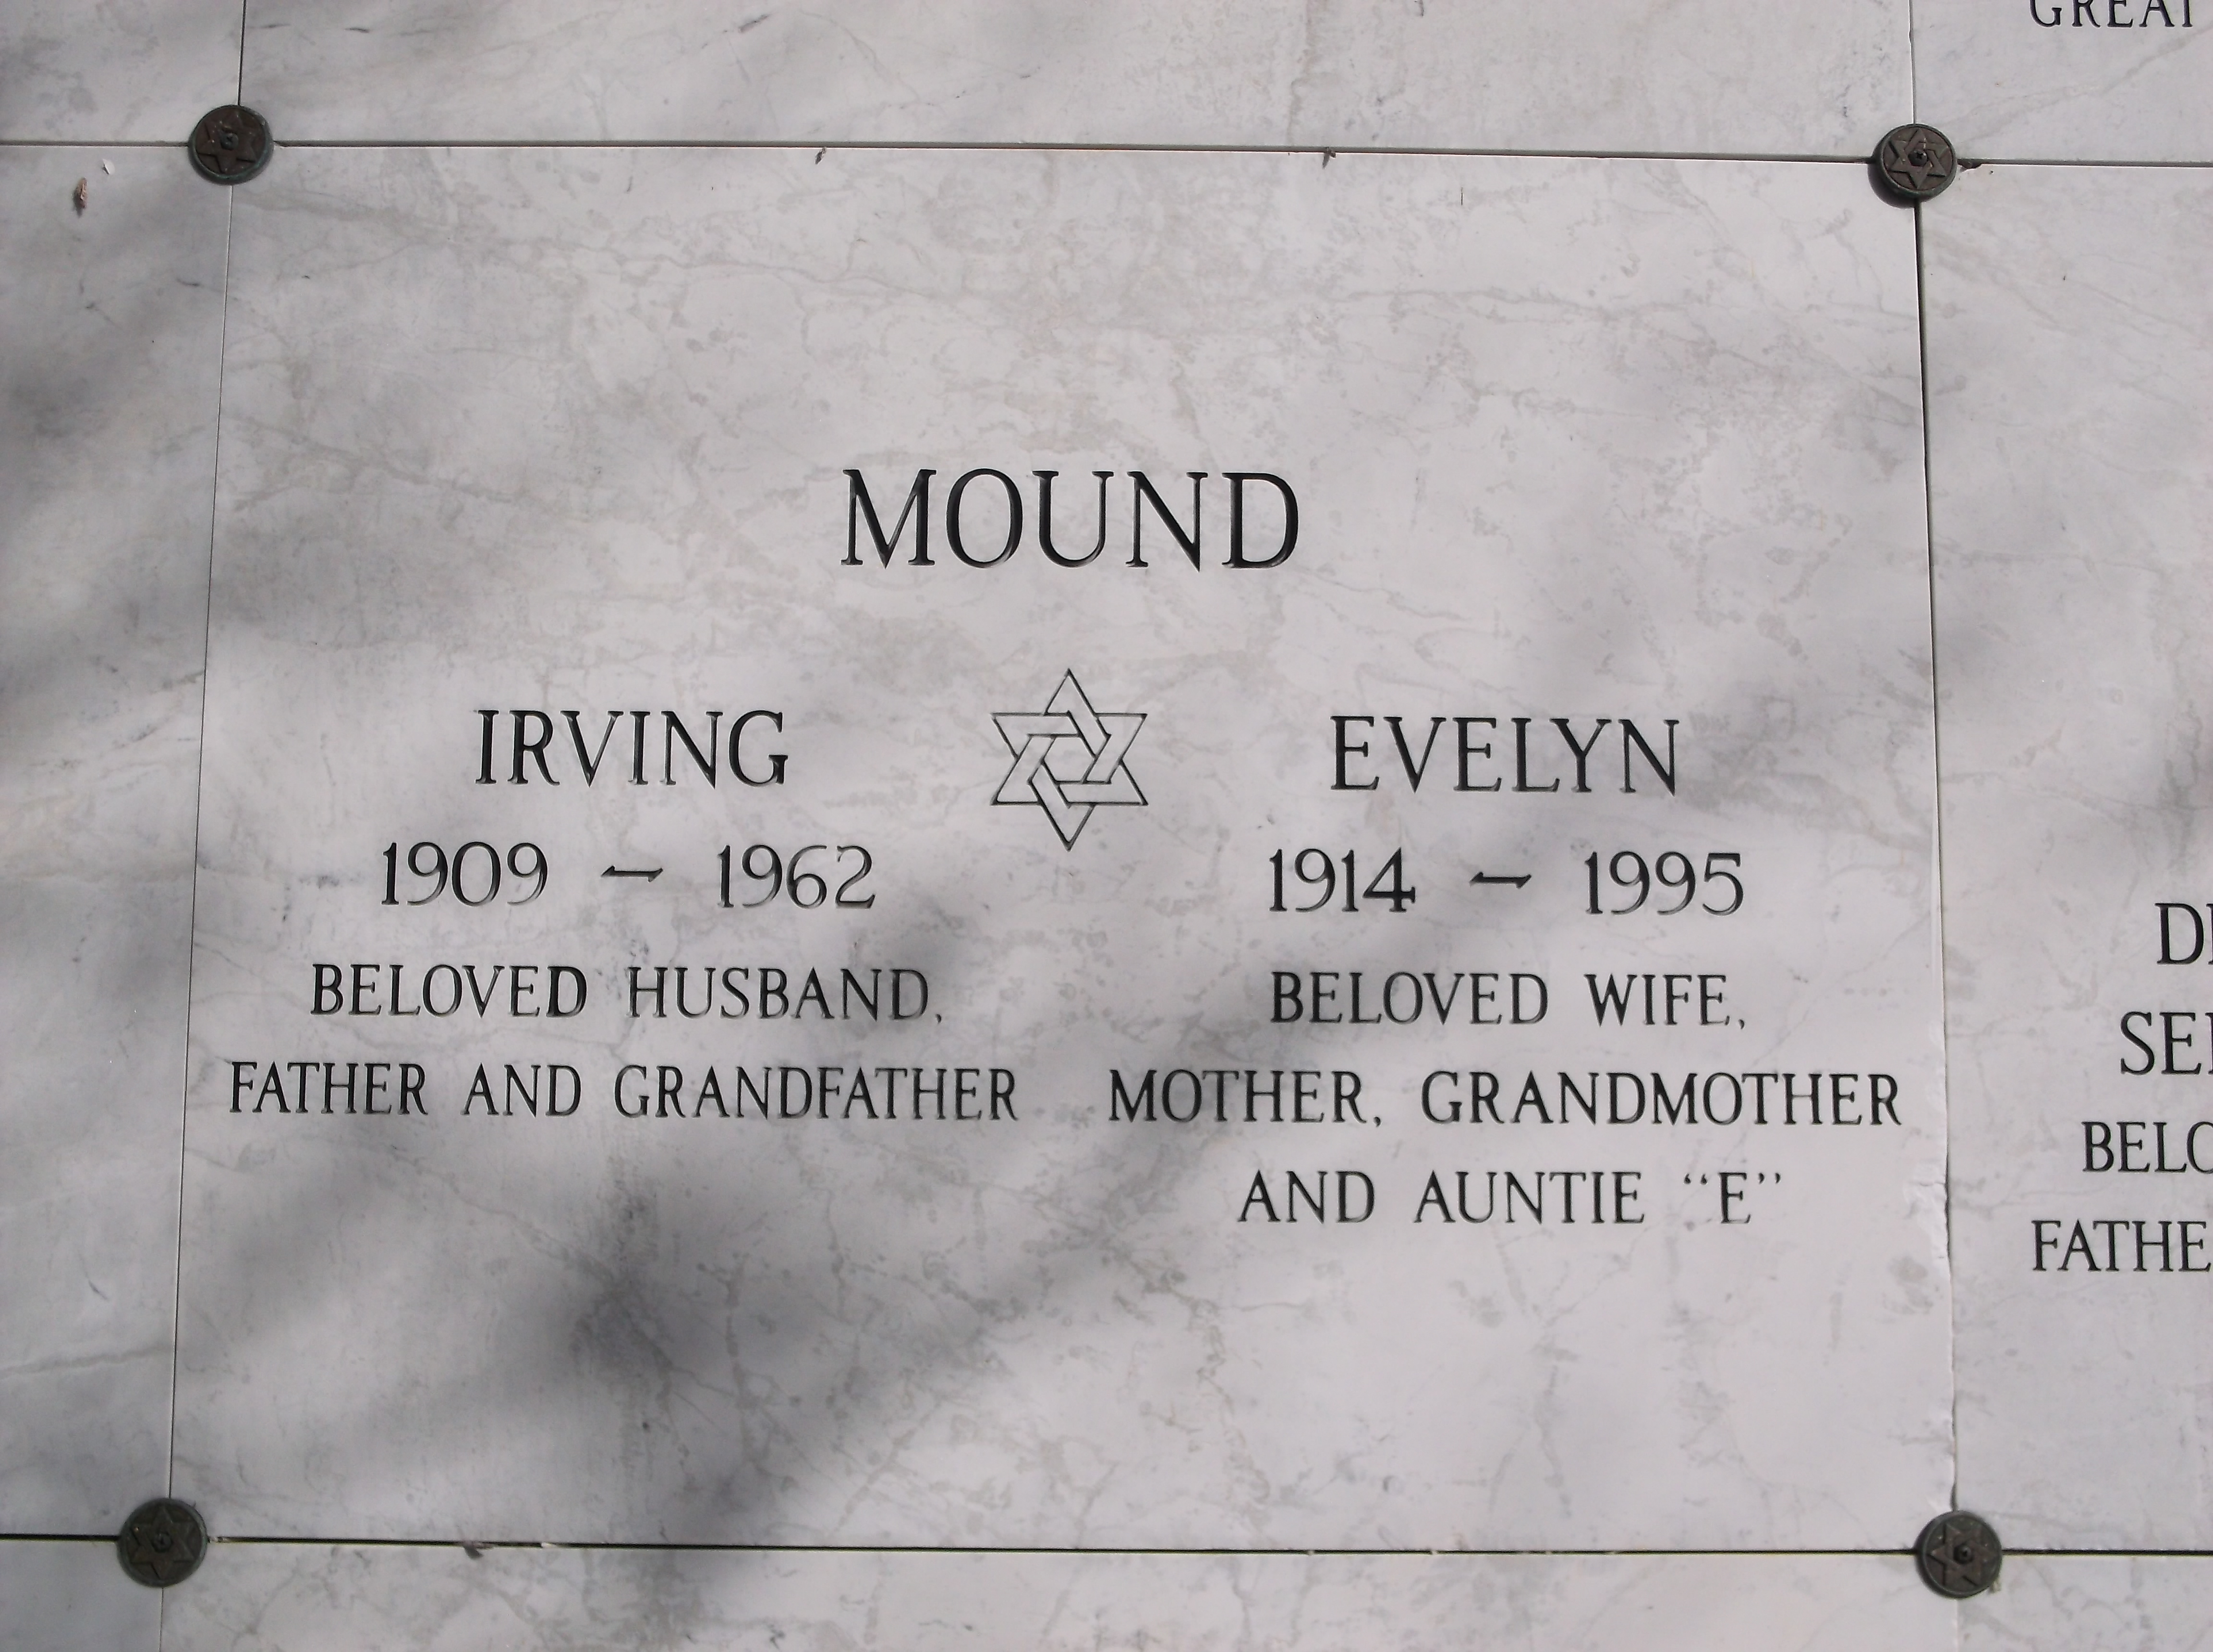 Irving Mound